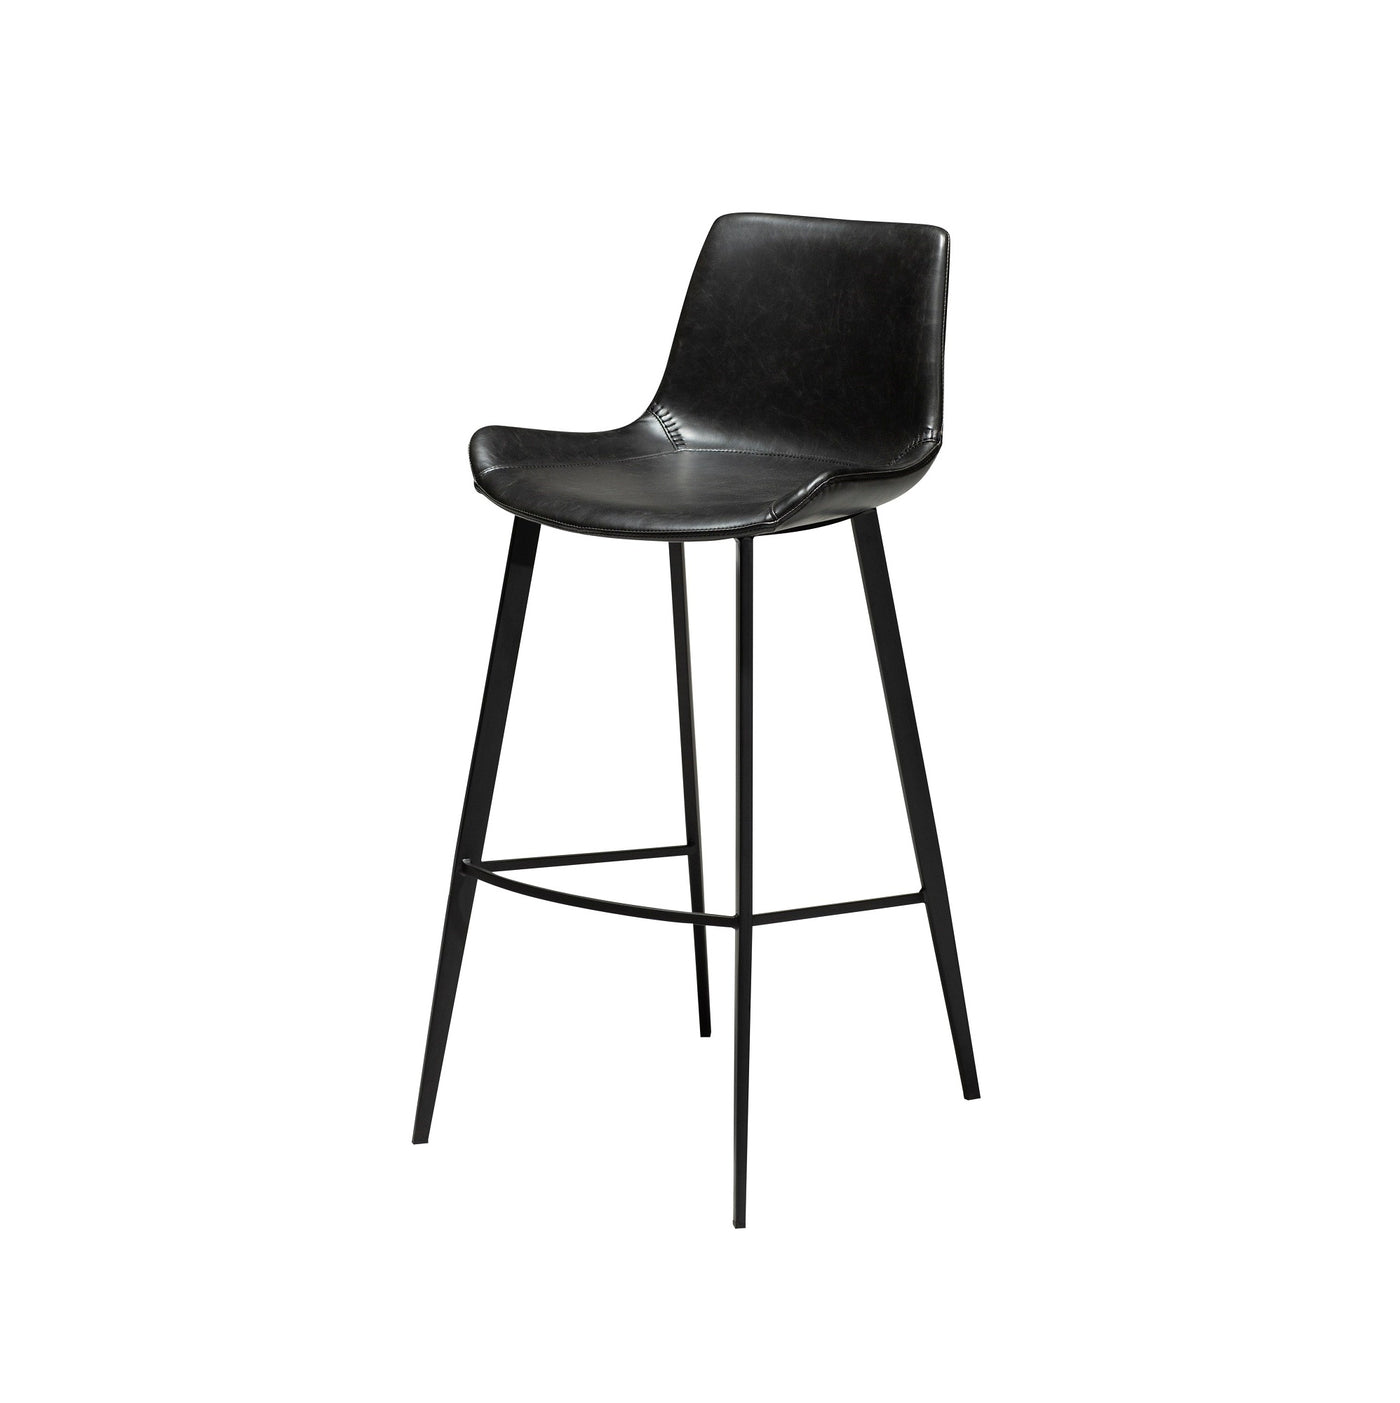 Hype barstol høj fra Dan-form i sort kunstlæder med sort metalstel